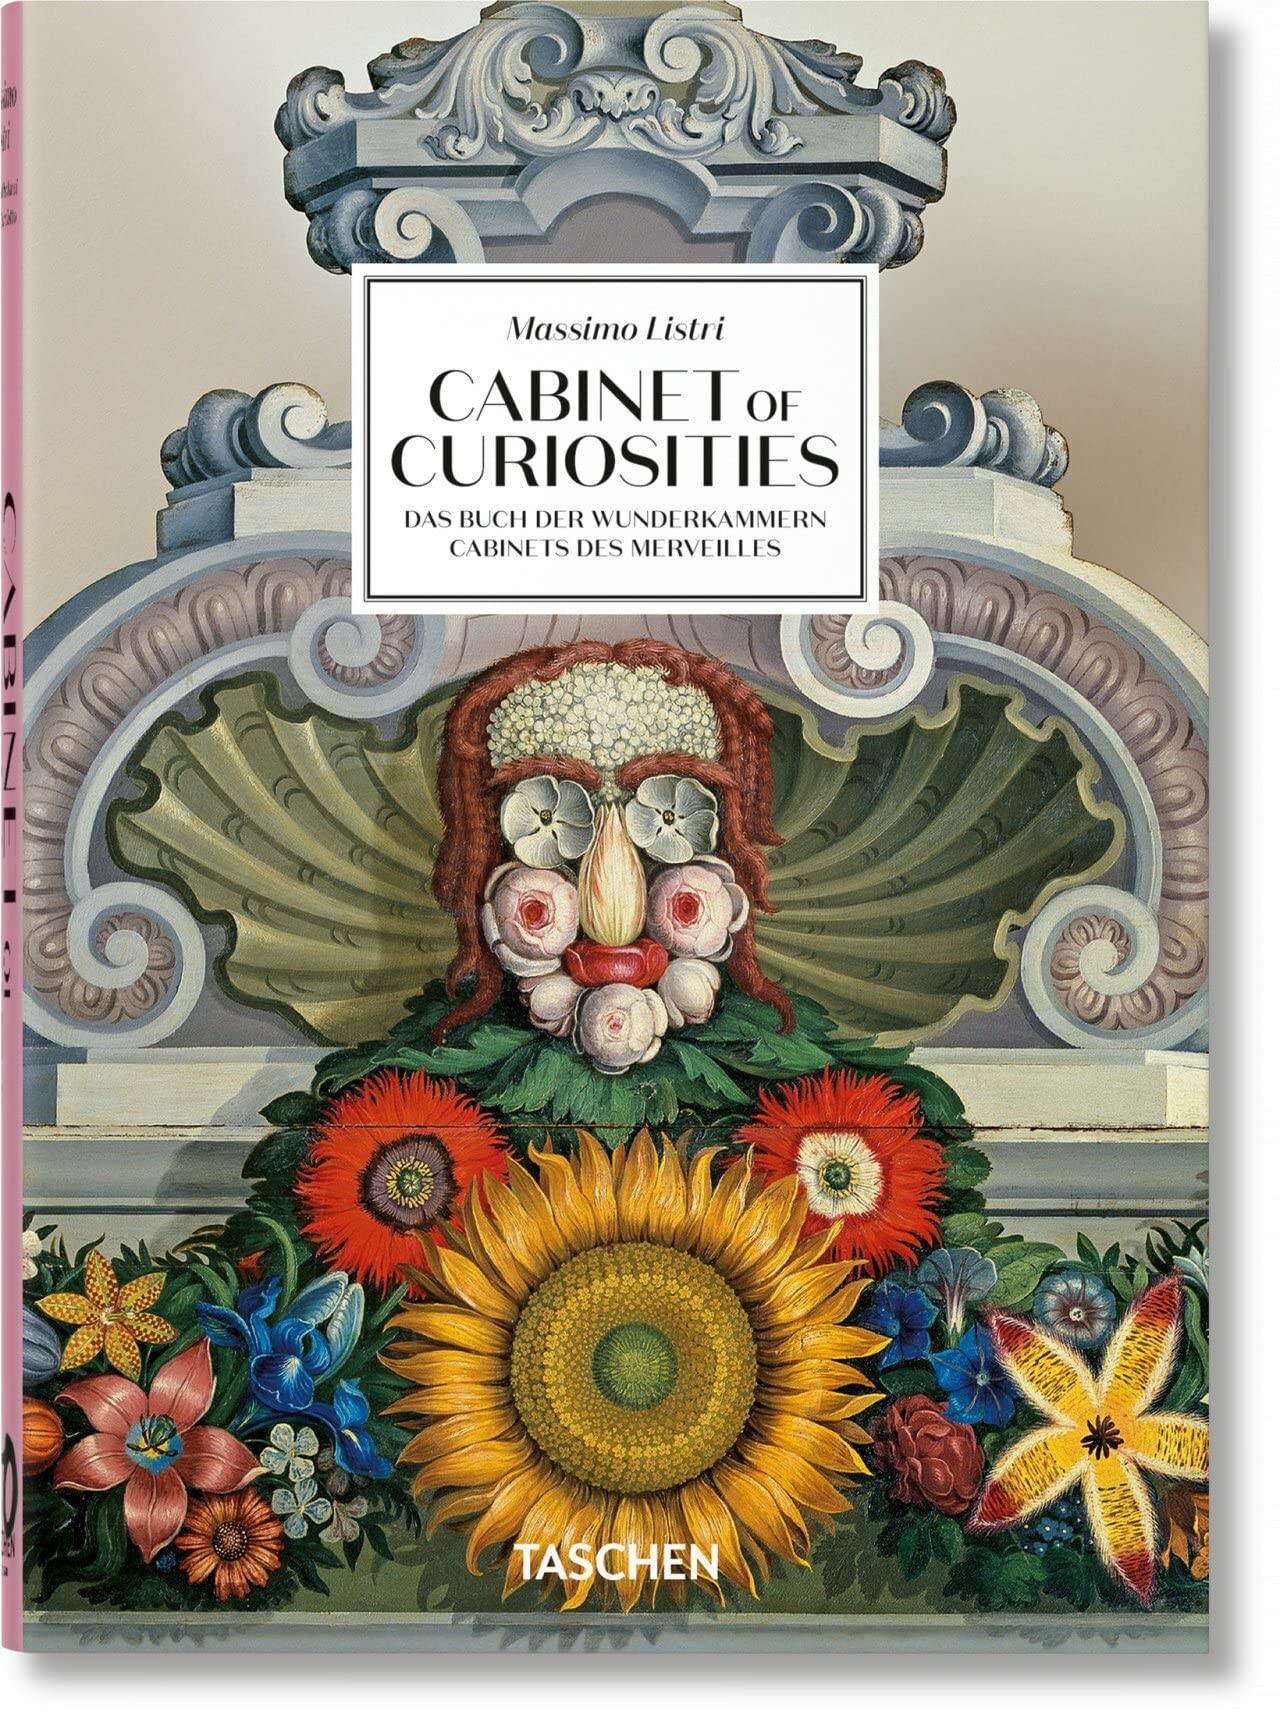 Antonio, Carciotto, Giulia Paolucci Massimo Listri. Cabinet of Curiosities. 40th Ed. 